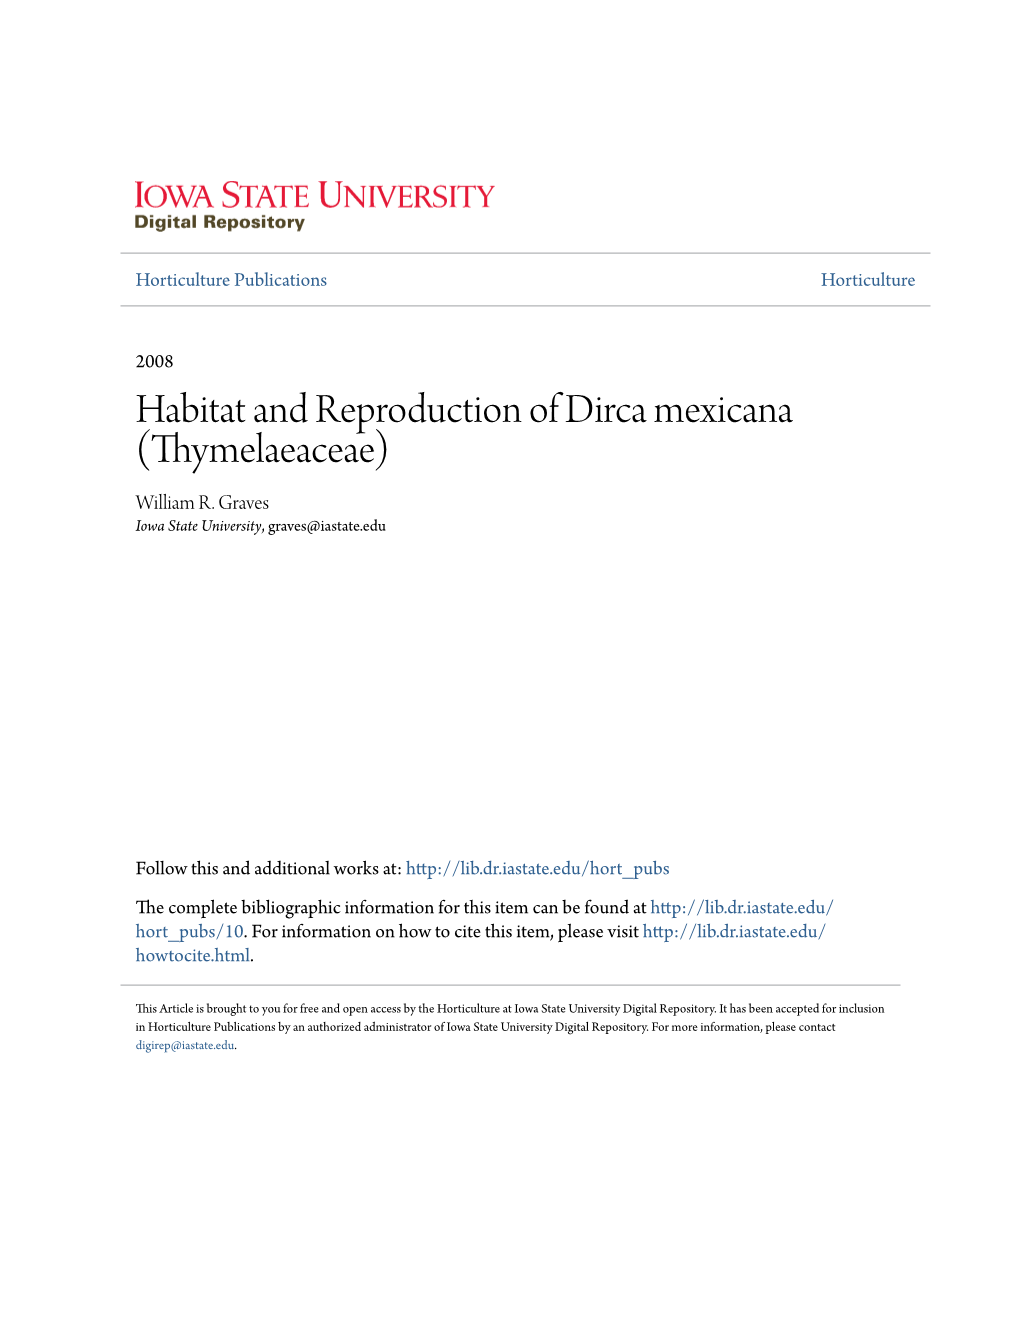 Habitat and Reproduction of Dirca Mexicana (Thymelaeaceae) William R